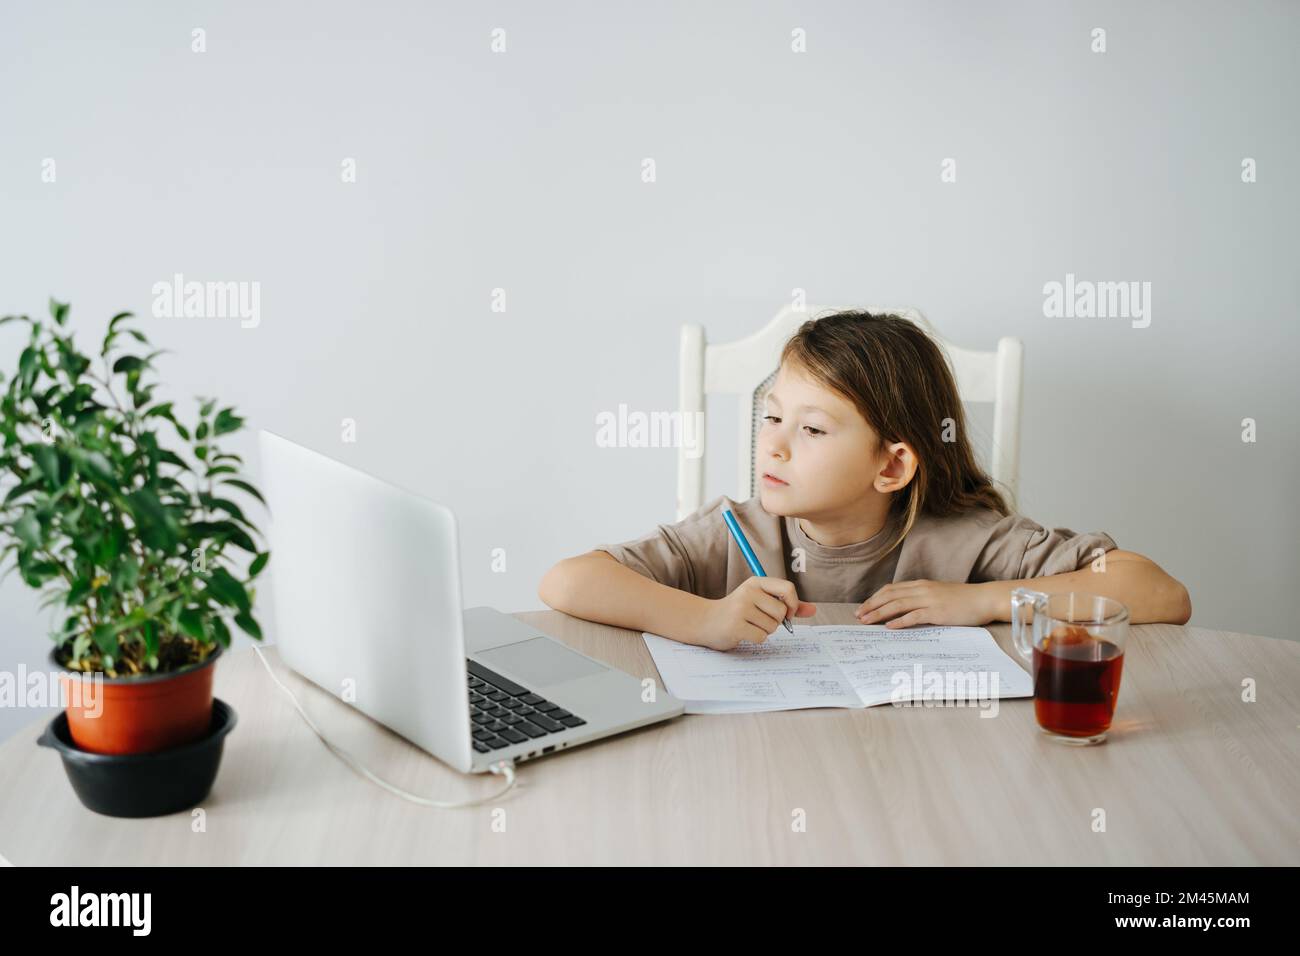 La bambina sta studiando con l'insegnante via webcam, scrivendo in un taccuino, guardando lo schermo. Tazza da tè e pianta in vaso su un tavolo. Foto Stock